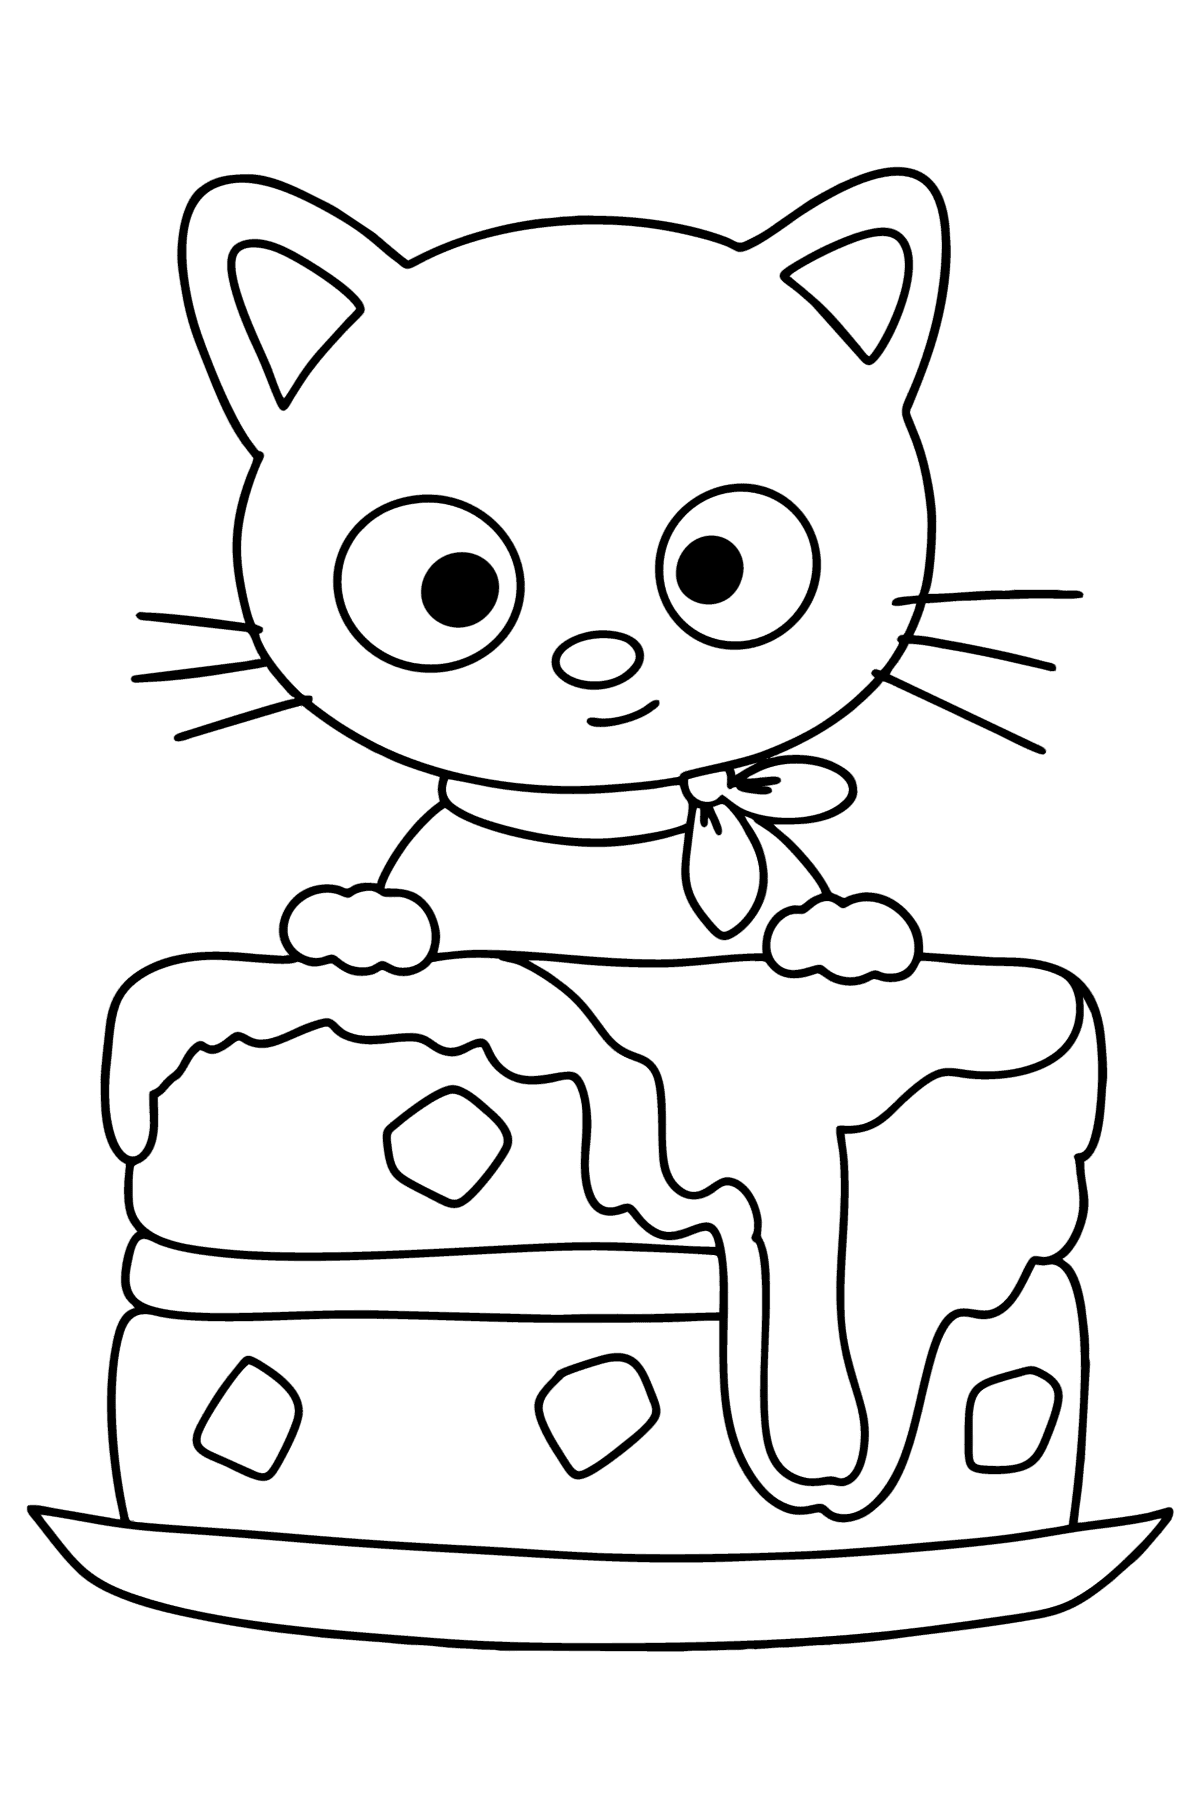 Coloriage Hello Kitty Chococat - Coloriages pour les Enfants